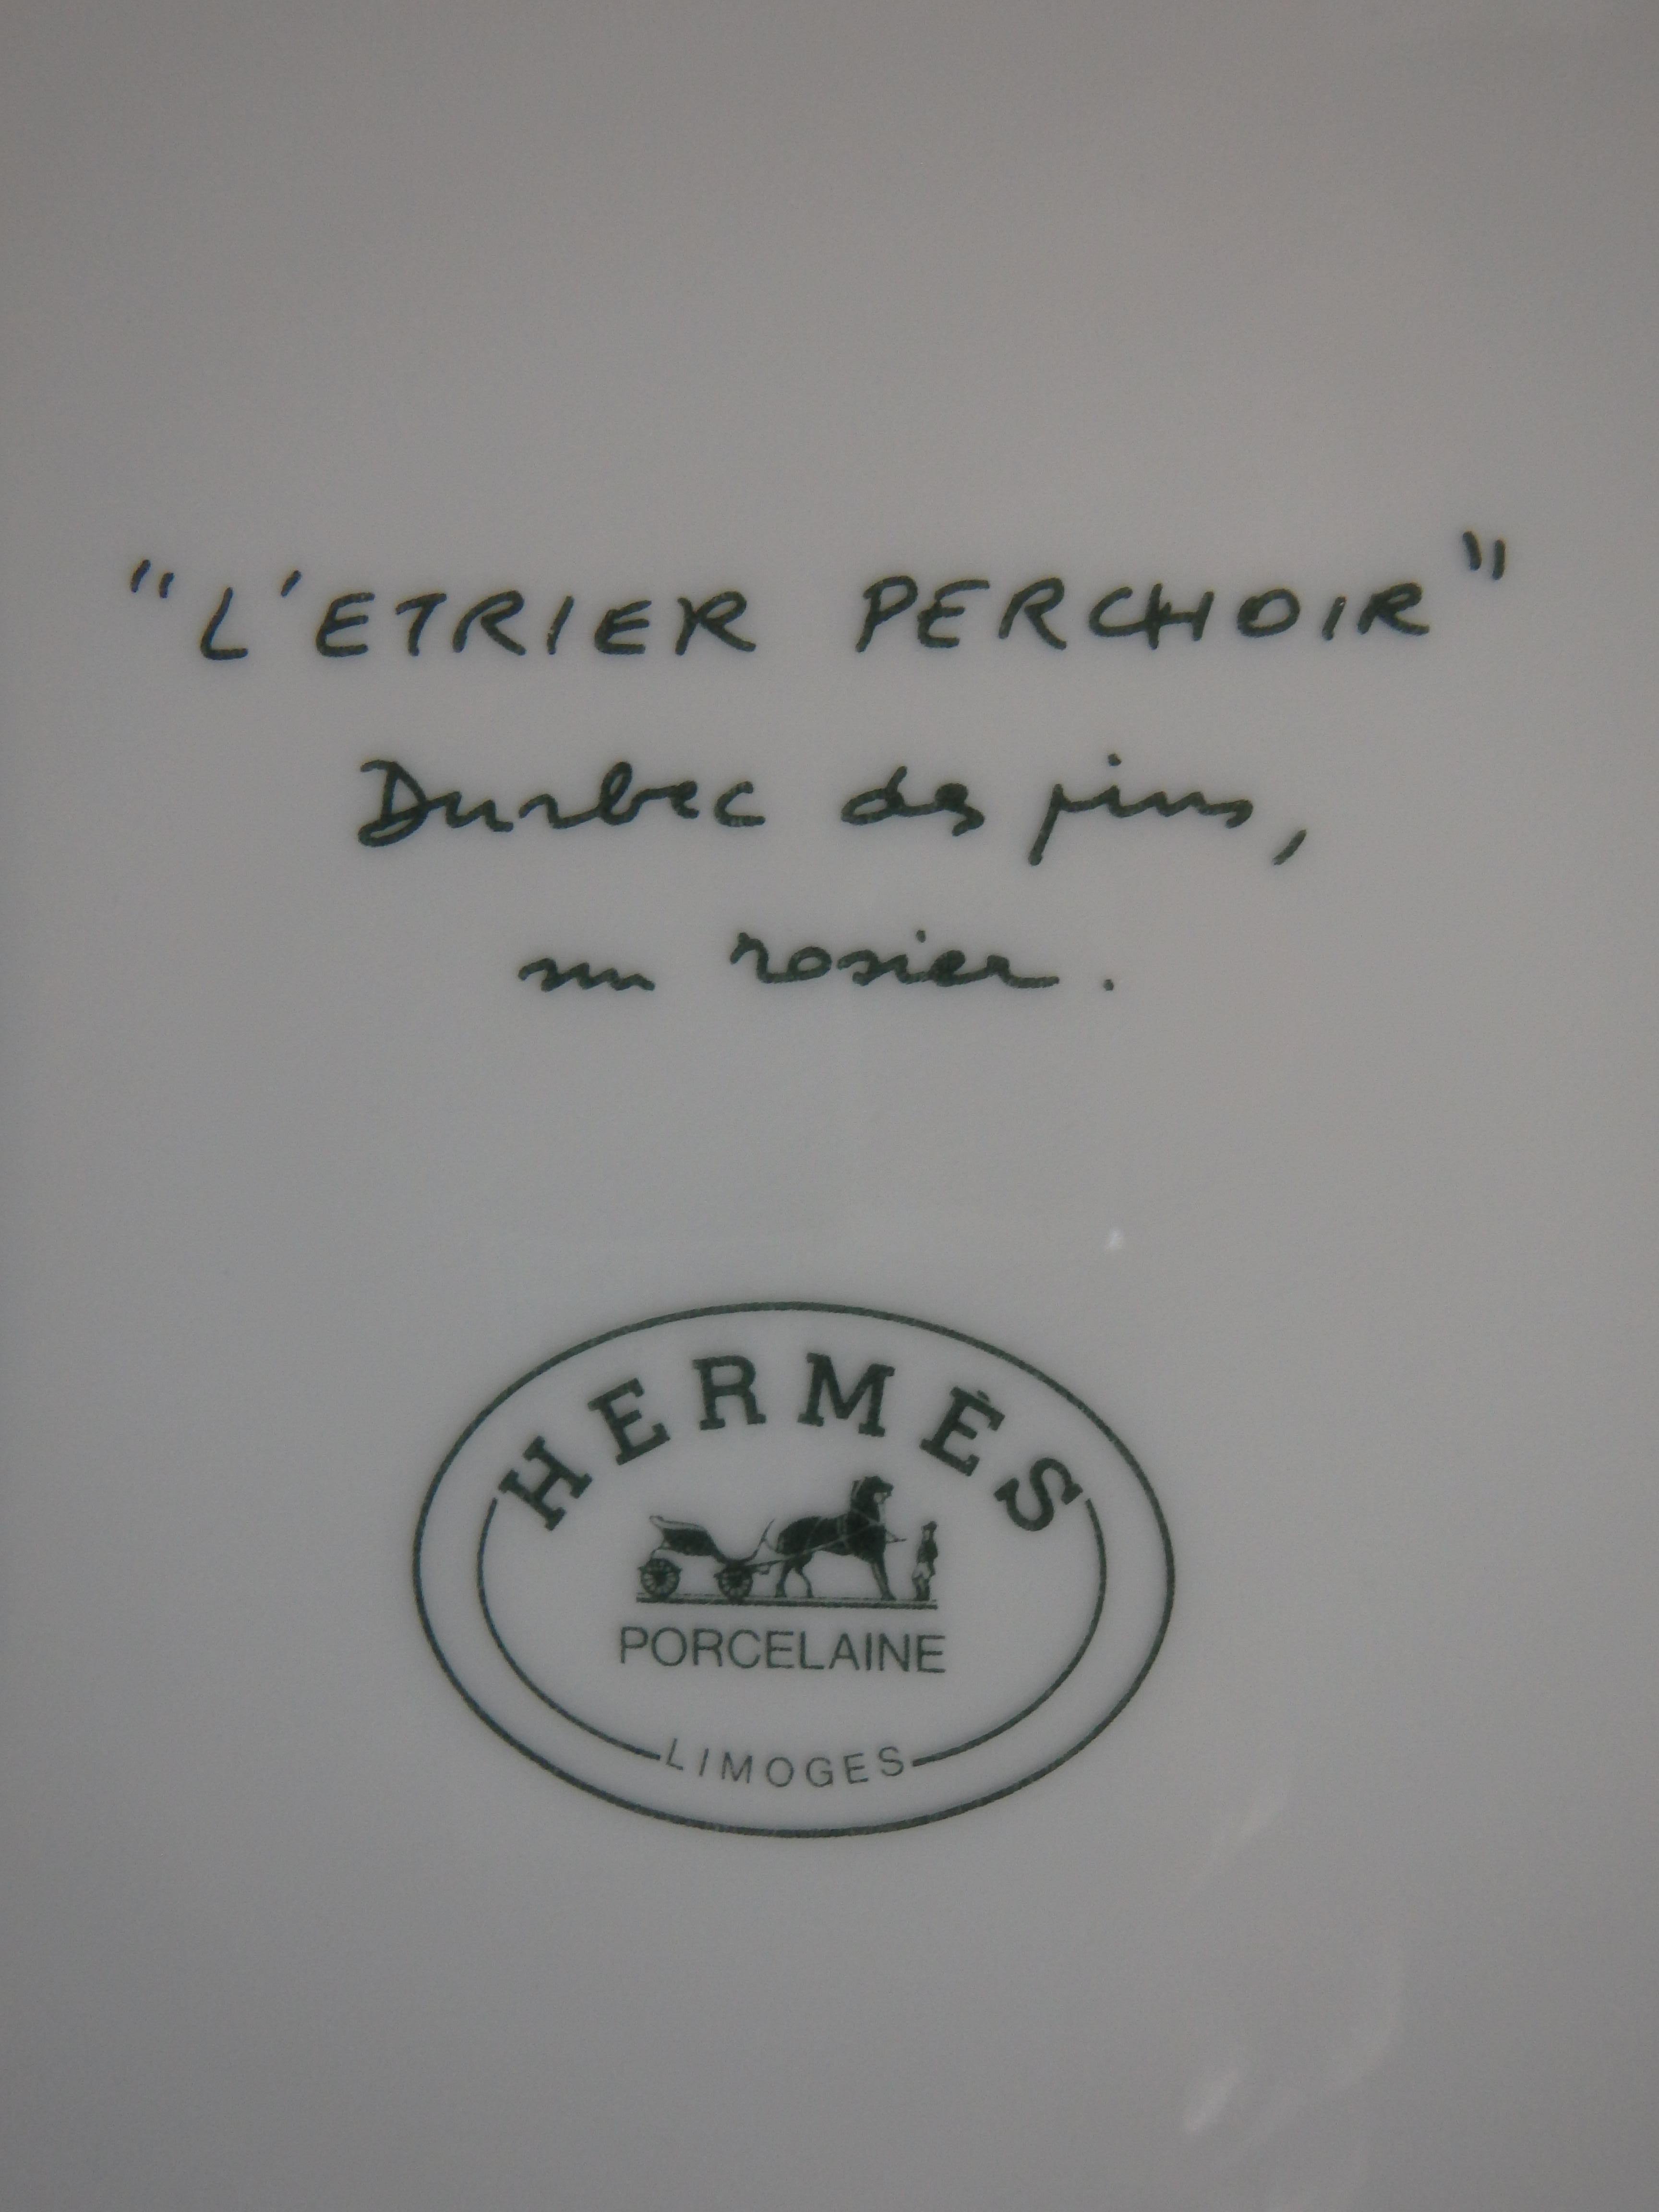 6 HERMES, Paris von Limoges, Essteller der Serie „L'etrier perchoir“  12